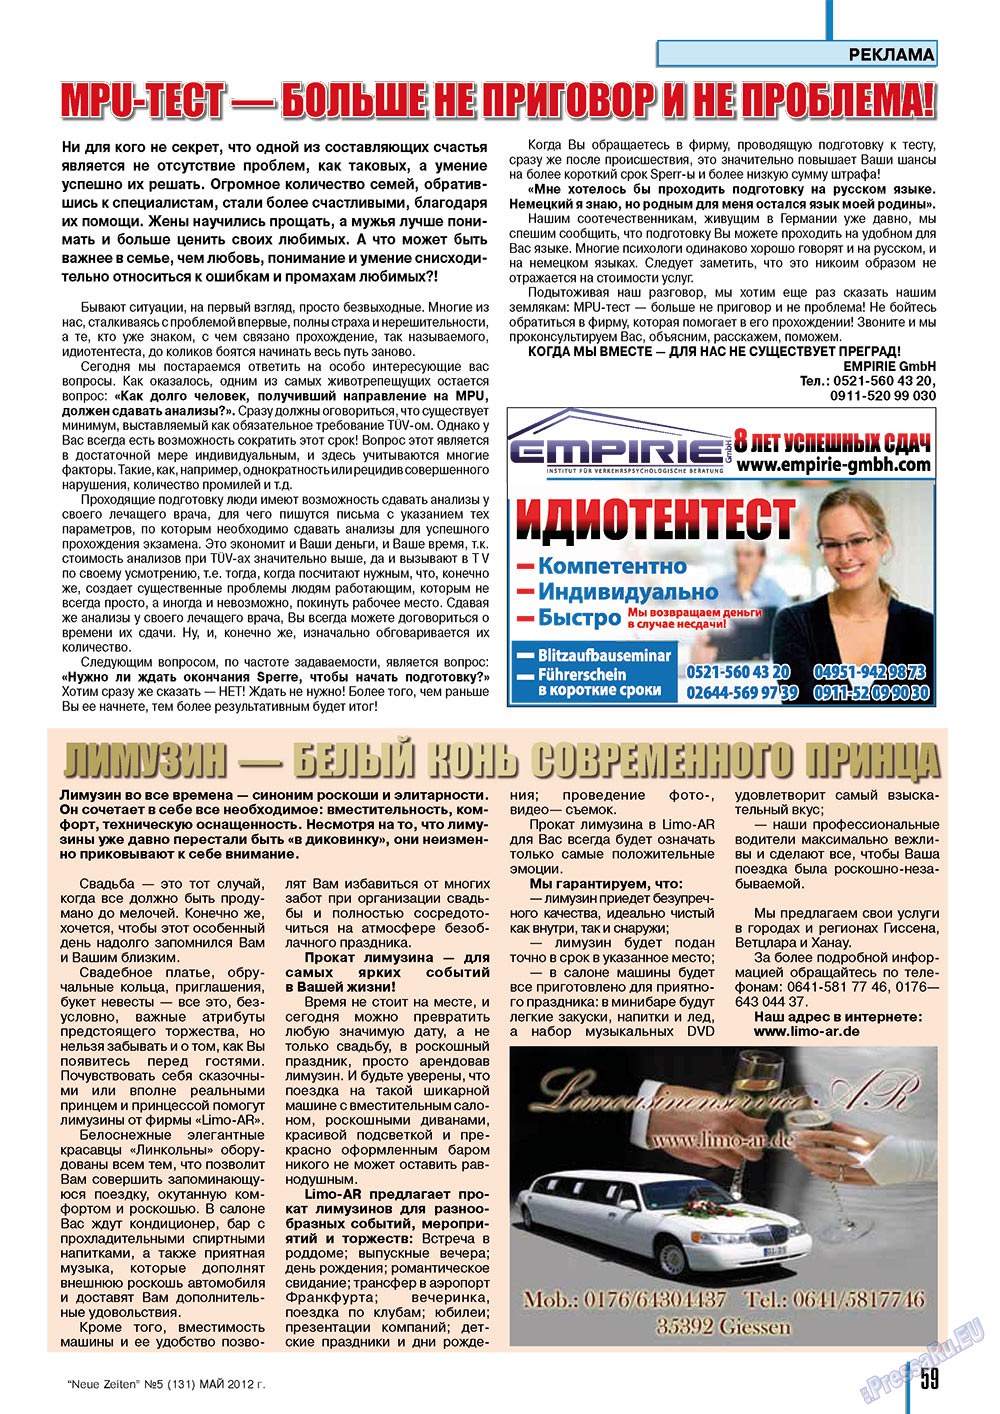 Neue Zeiten, журнал. 2012 №5 стр.59